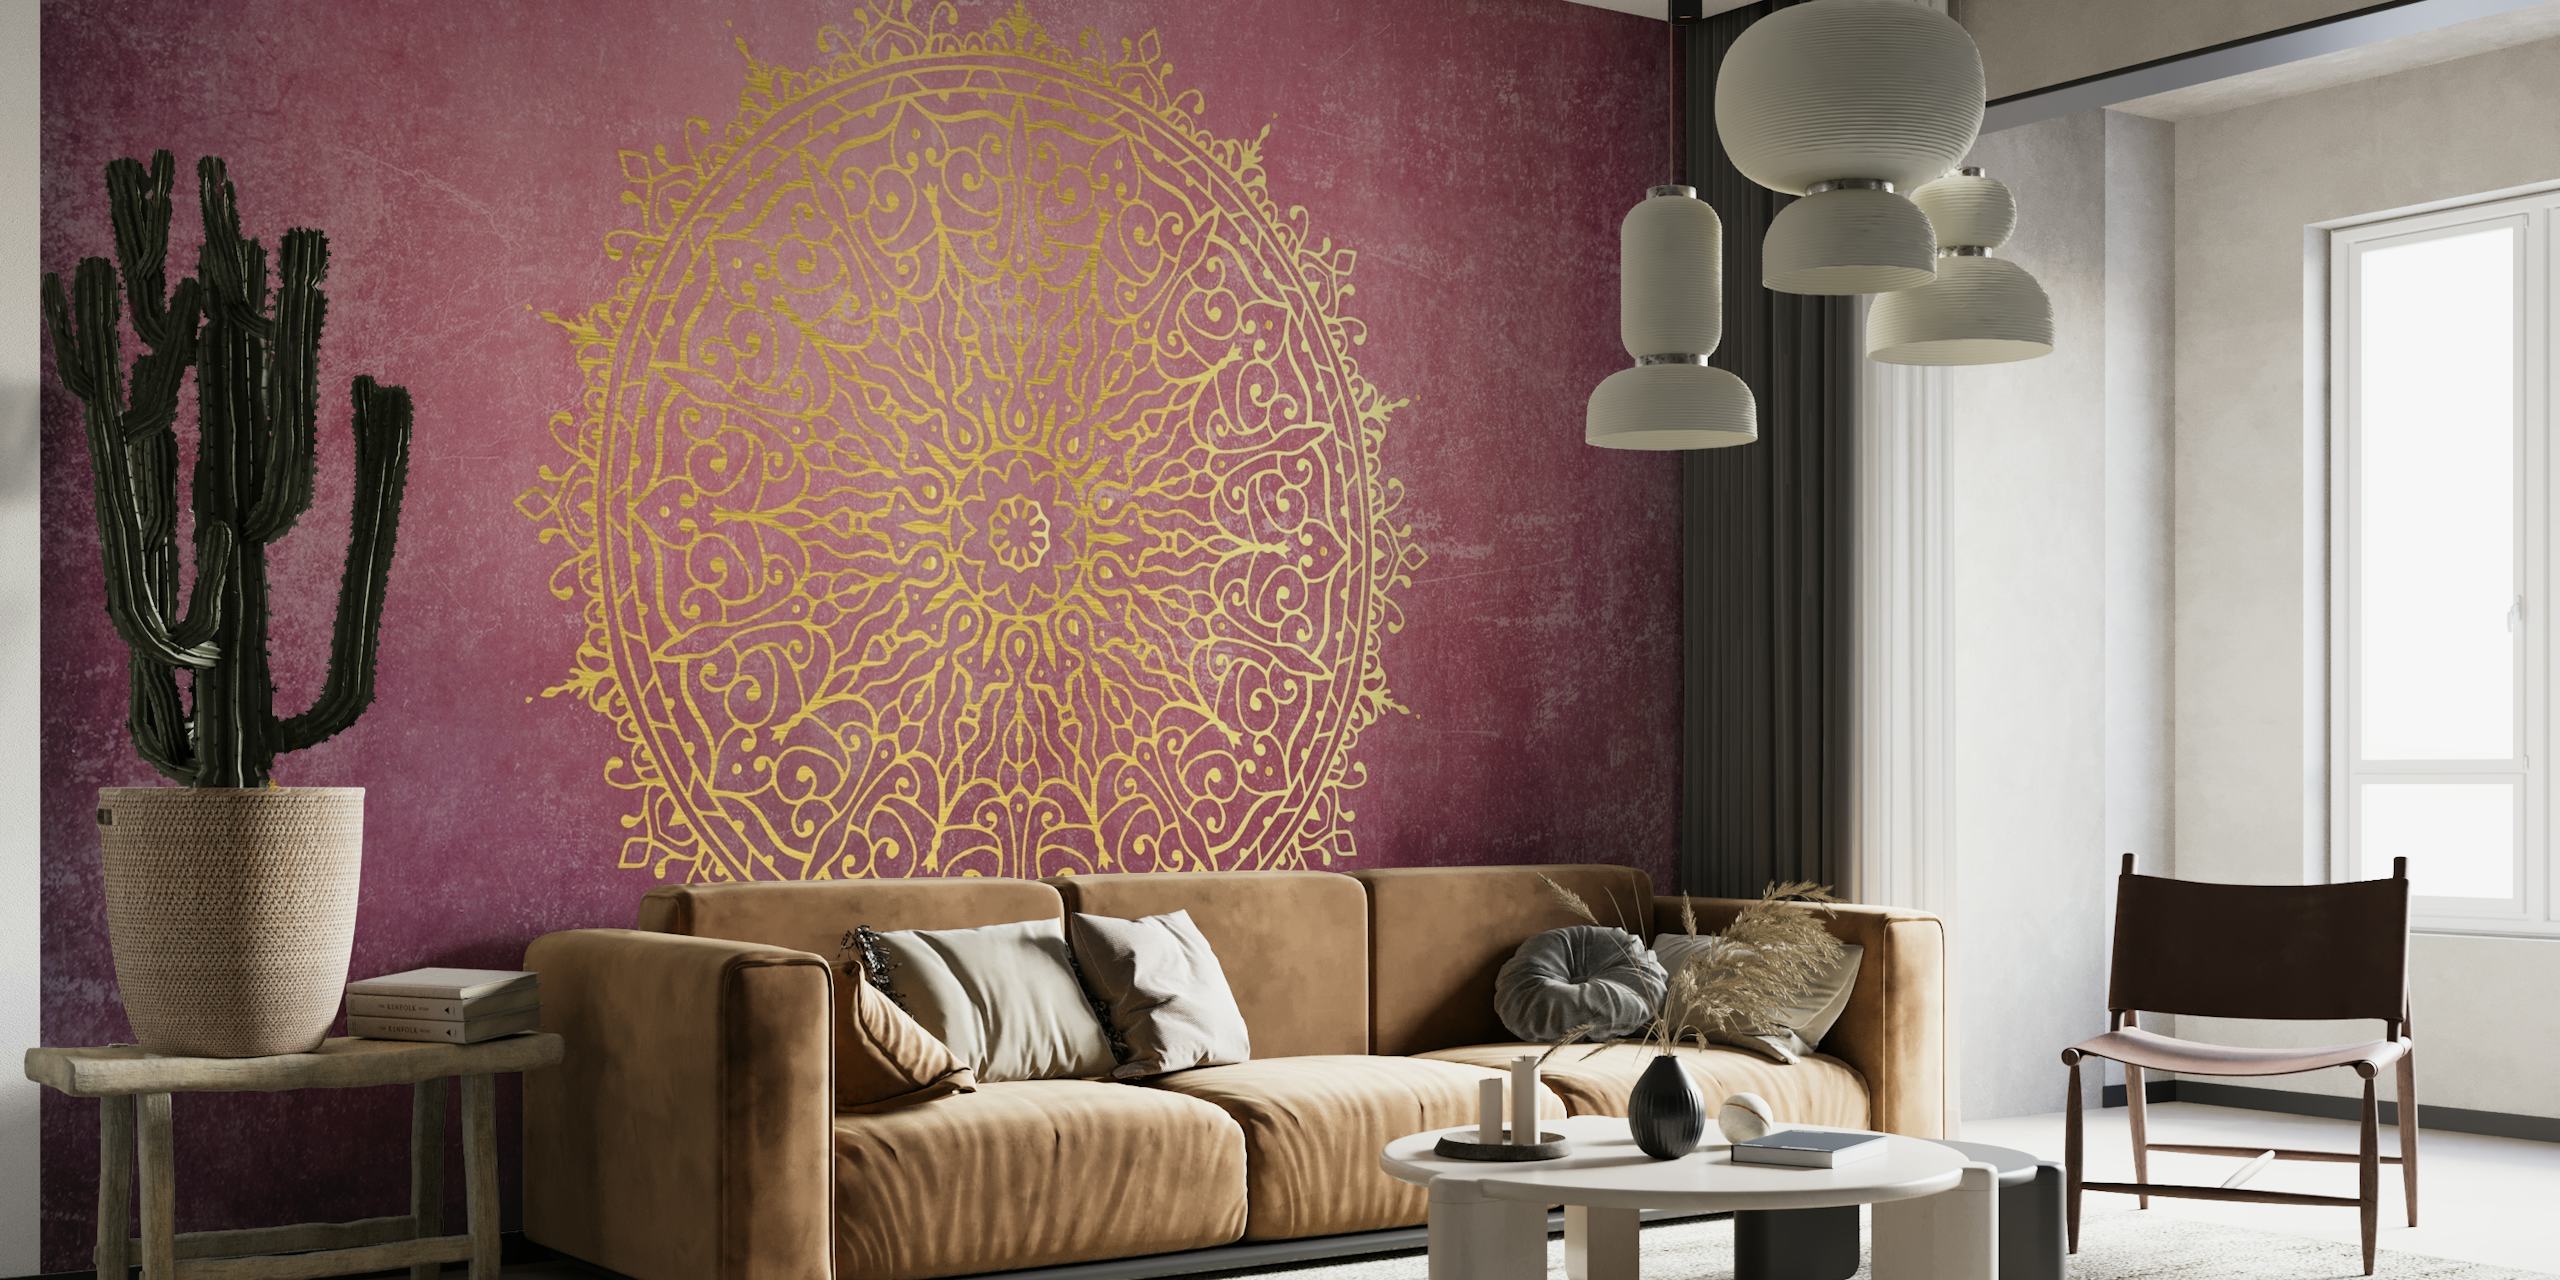 Mandala in Burgundy and Gold wallpaper